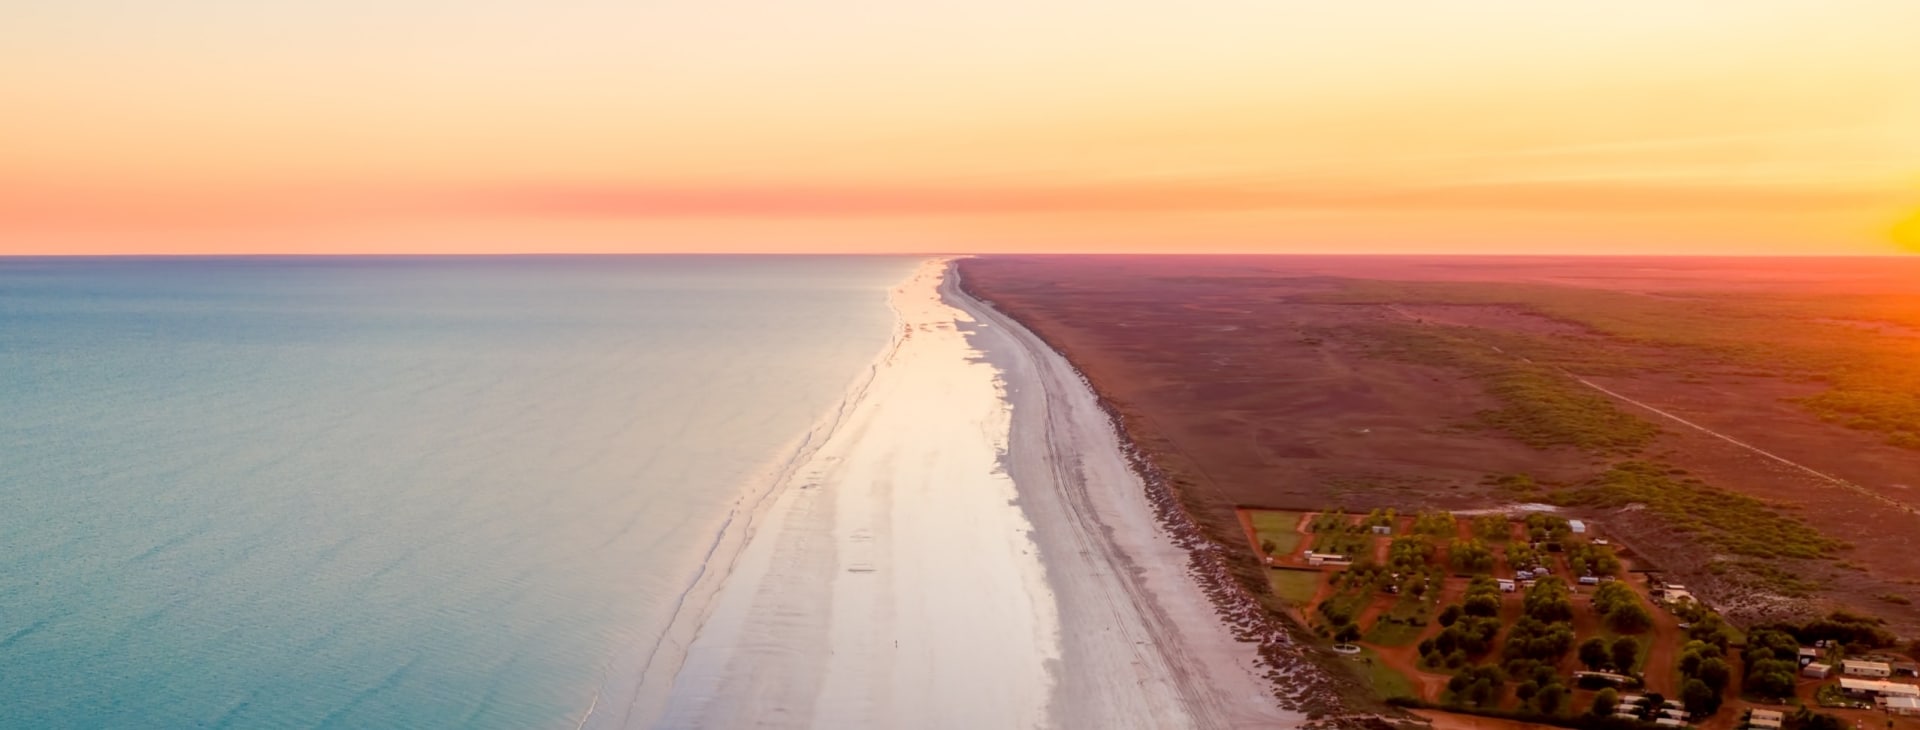 西澳州八十哩海灘©CJ Maddock（@awaywithcj），澳洲西北部